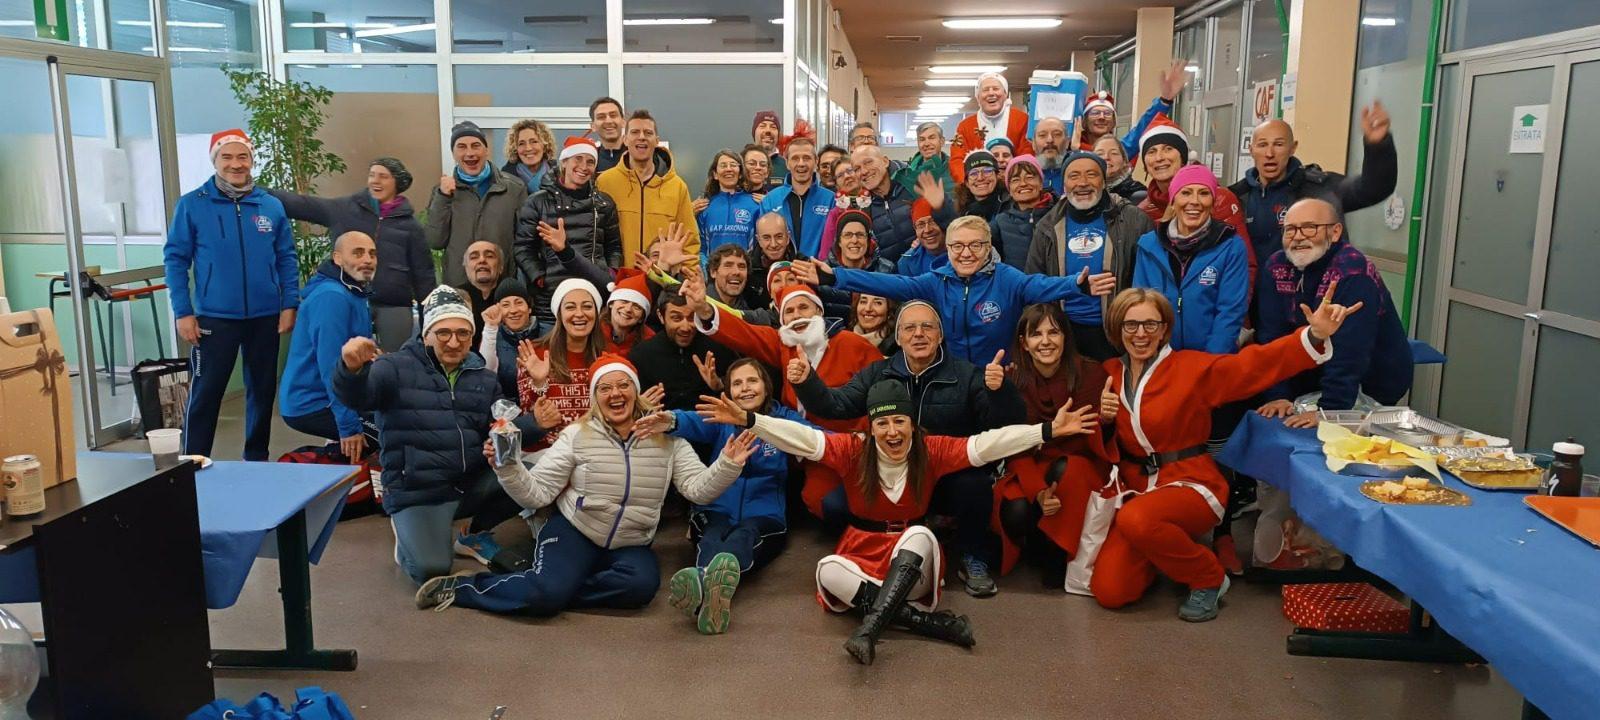 Saronno, la Babbo Gap Race tra gli eventi più riusciti del Natale saronnese